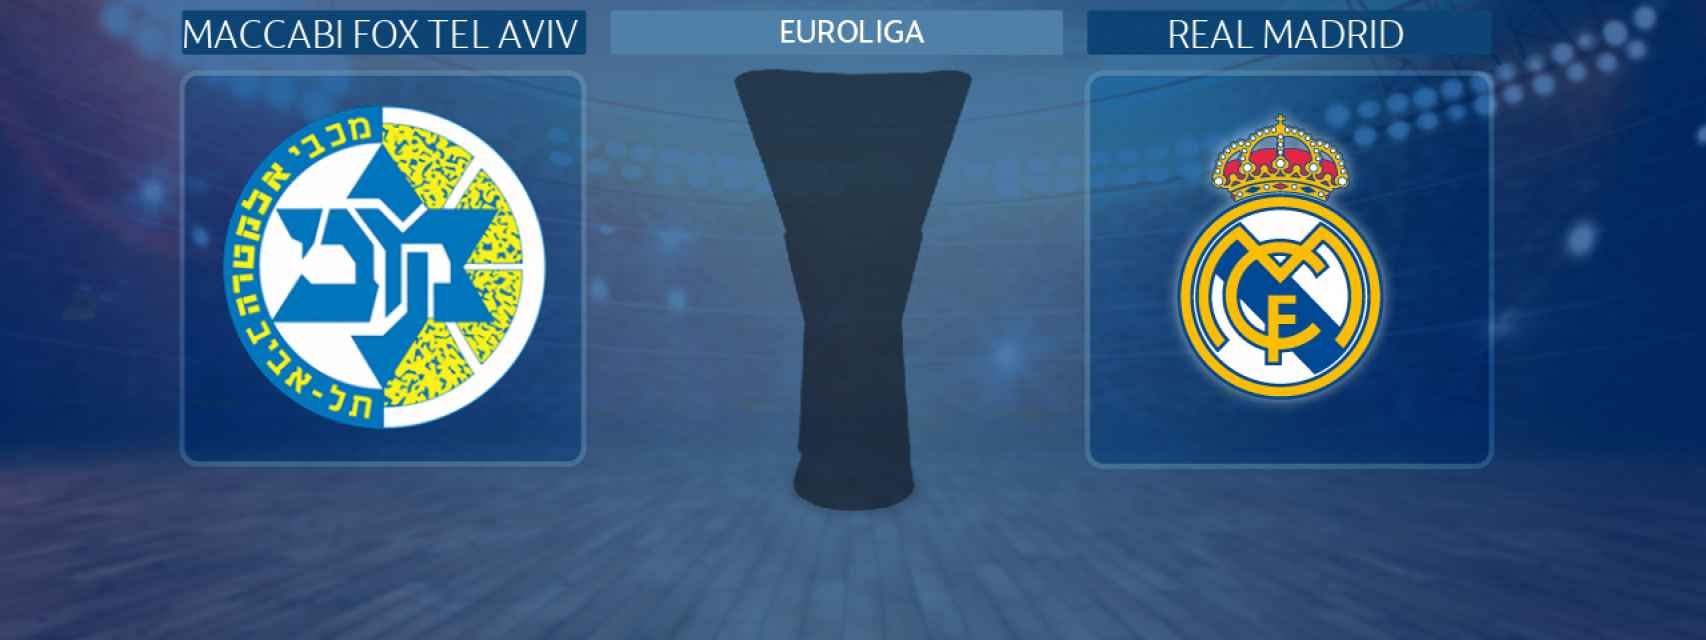 Maccabi Fox Tel Aviv - Real Madrid, partido de la Euroliga